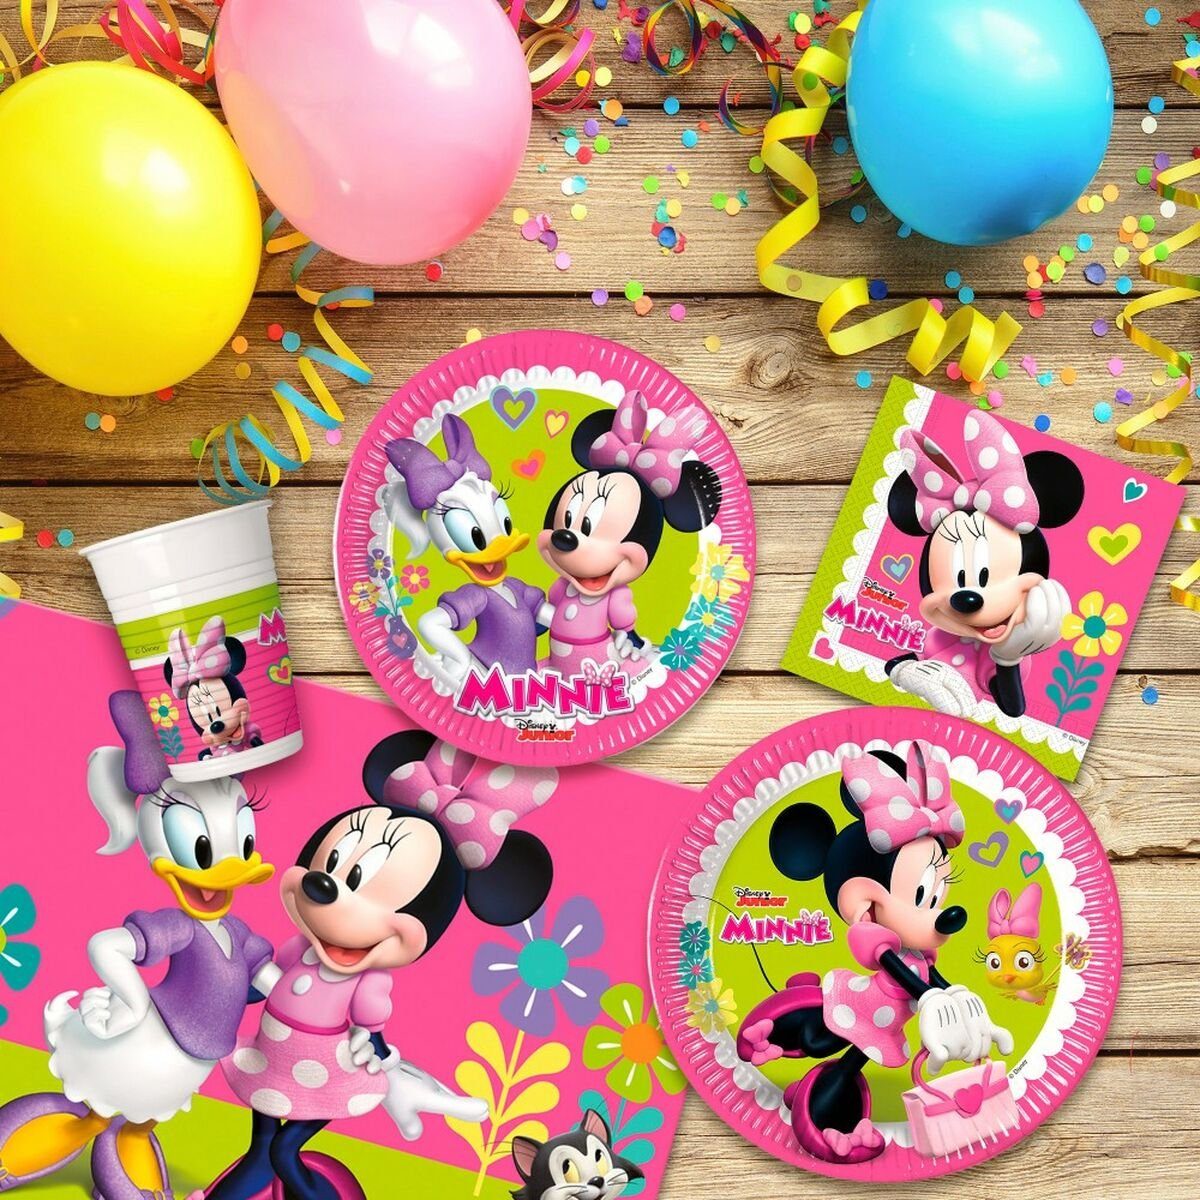 Set Mouse 16 Minnie Minnie Einweggeschirr-Set Stücke Mouse Disney Partyartikel Happy Deluxe 89